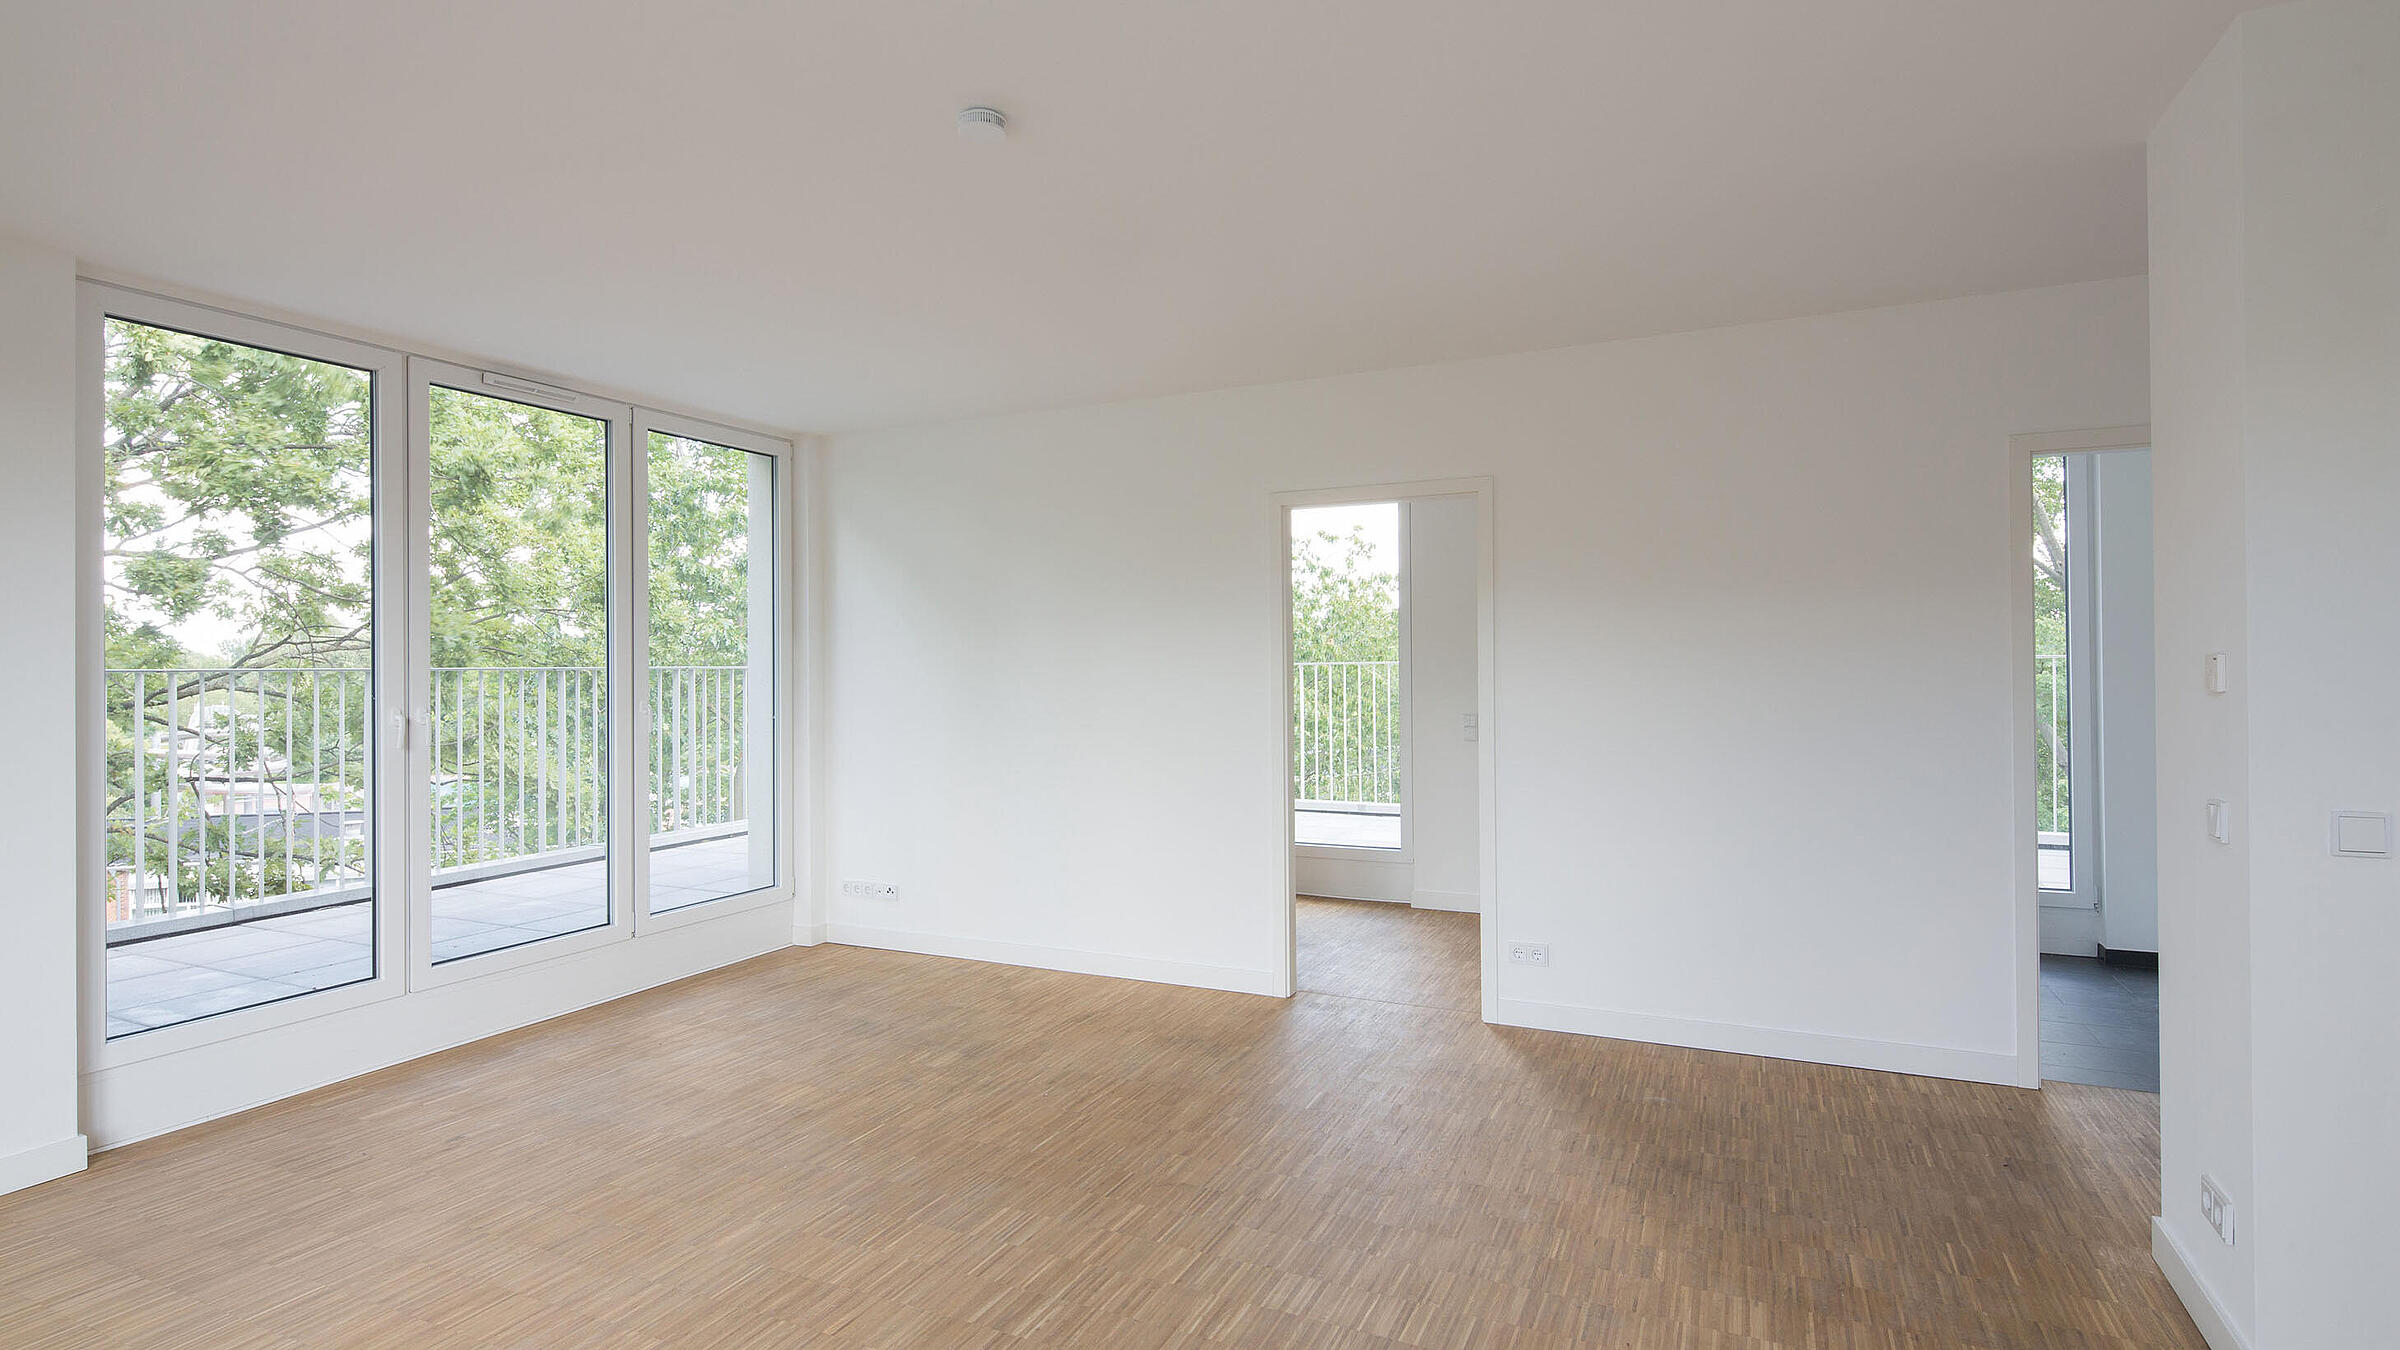 Innenaufnahme zeigt ein leeres Zimmer mit hellem Stabholzparkett, bodentiefen Fenstern und umlaufendem Balkon.